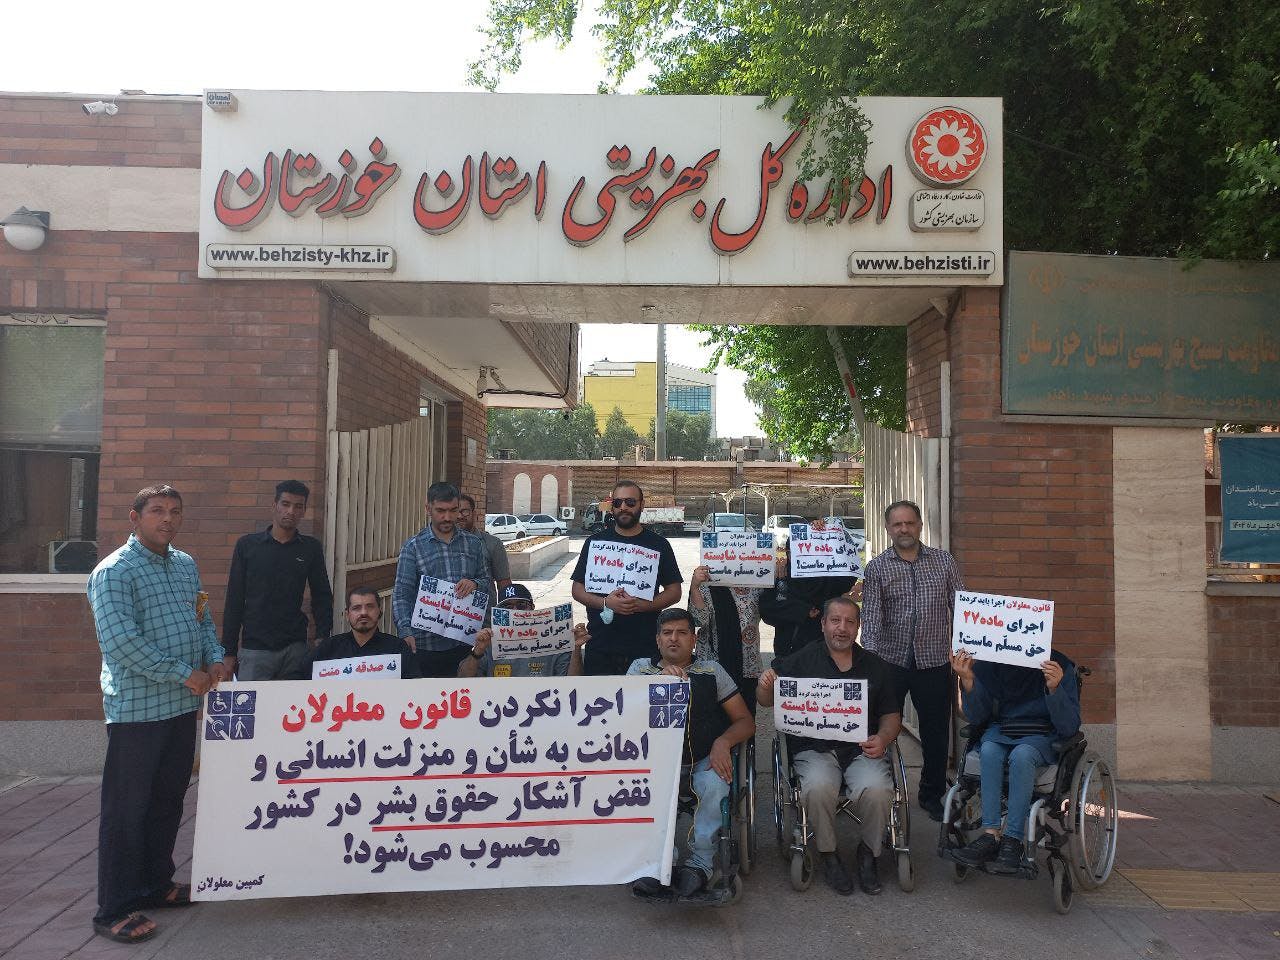 تصویری از اعتراضات مهر ماه معلولان در نقاط مختلف ایران به عدم اجرای ماده ۲۷ قانون حمایت از حقوق معلولان